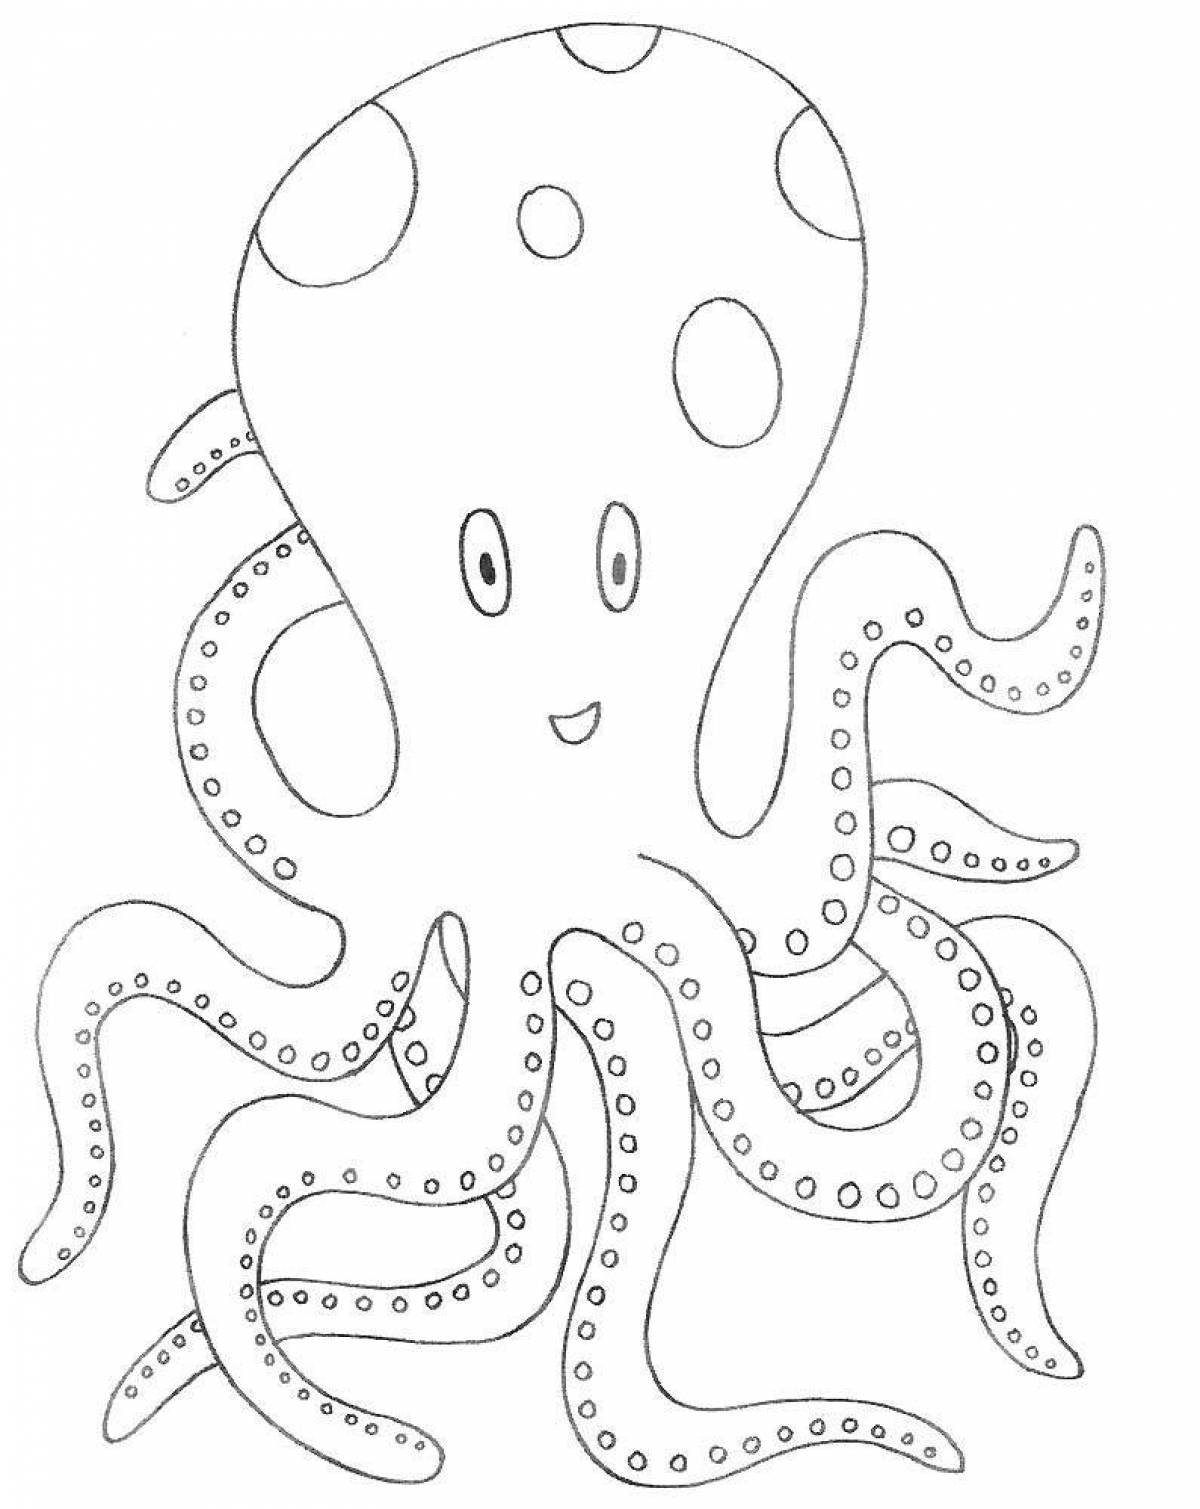 Children's coloring octopus